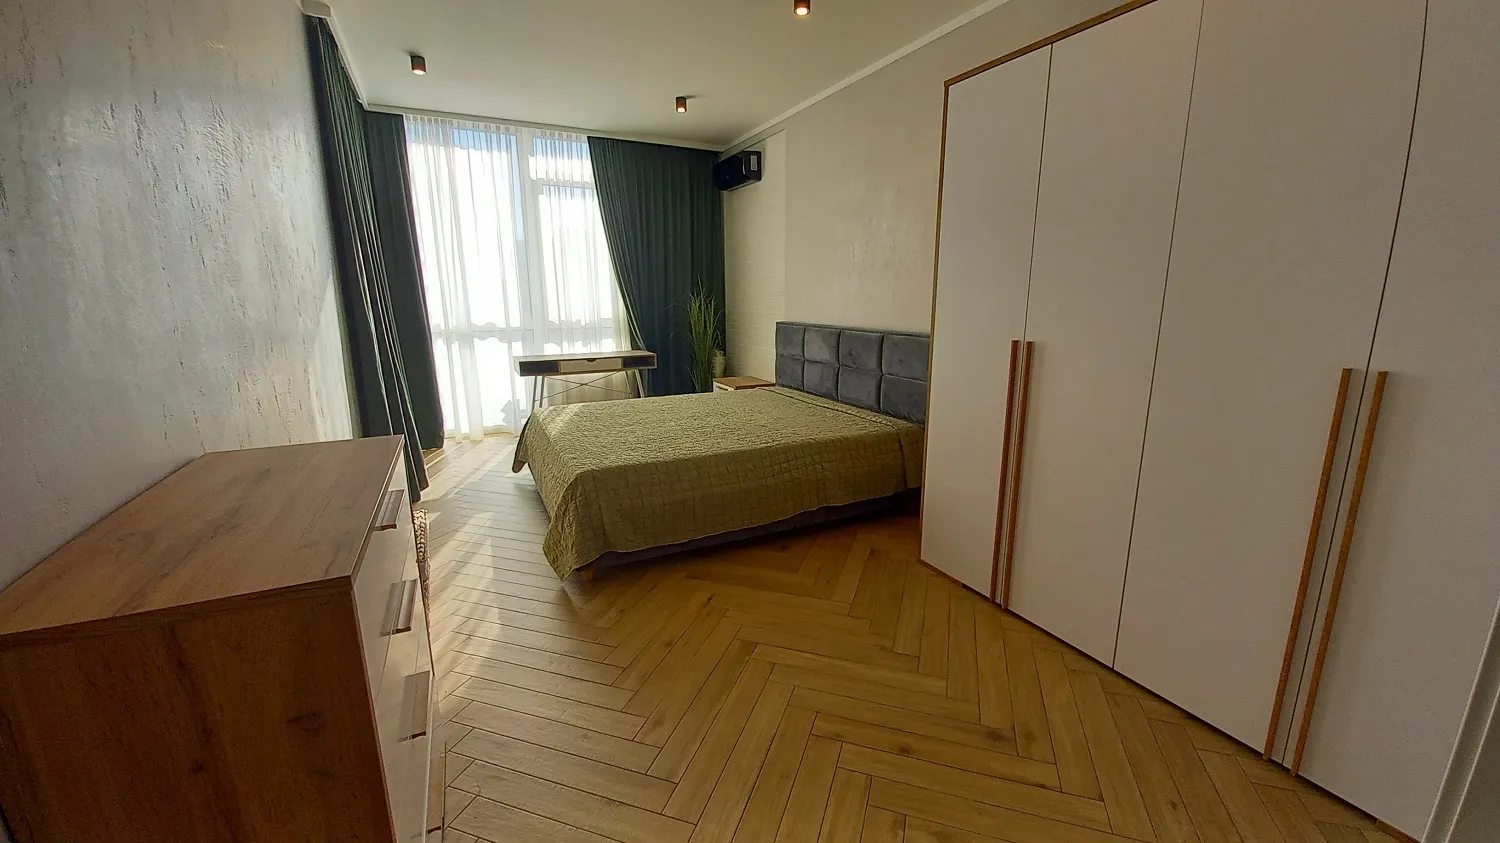 Здам квартиру. 1 кімната, 52 m², 5 поверх/9 поверхів. Печерський район, Київ. 